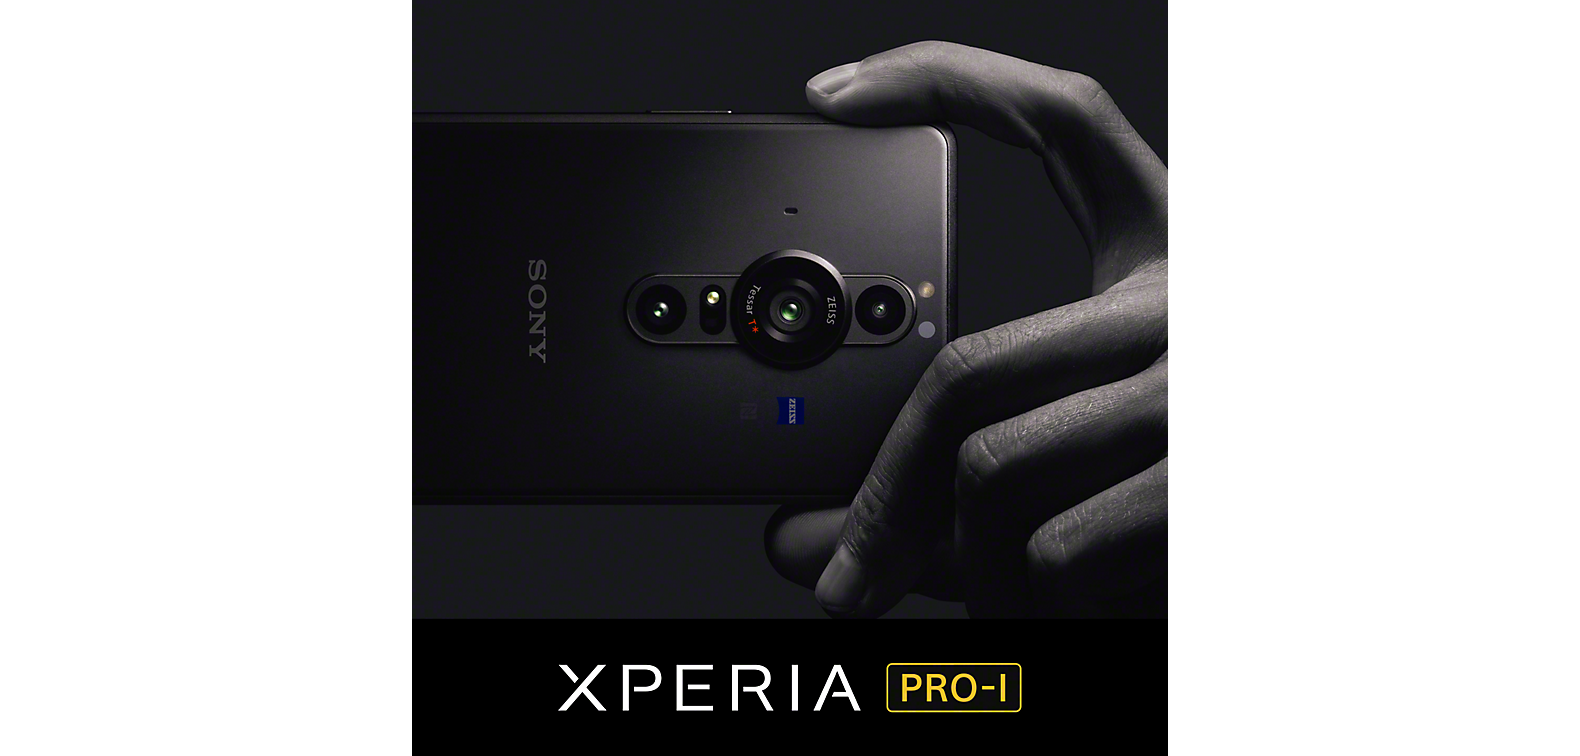 Bàn tay cầm chiếc điện thoại thông minh Xperia PRO-I màu đen phía trên logo Xperia PRO-I.